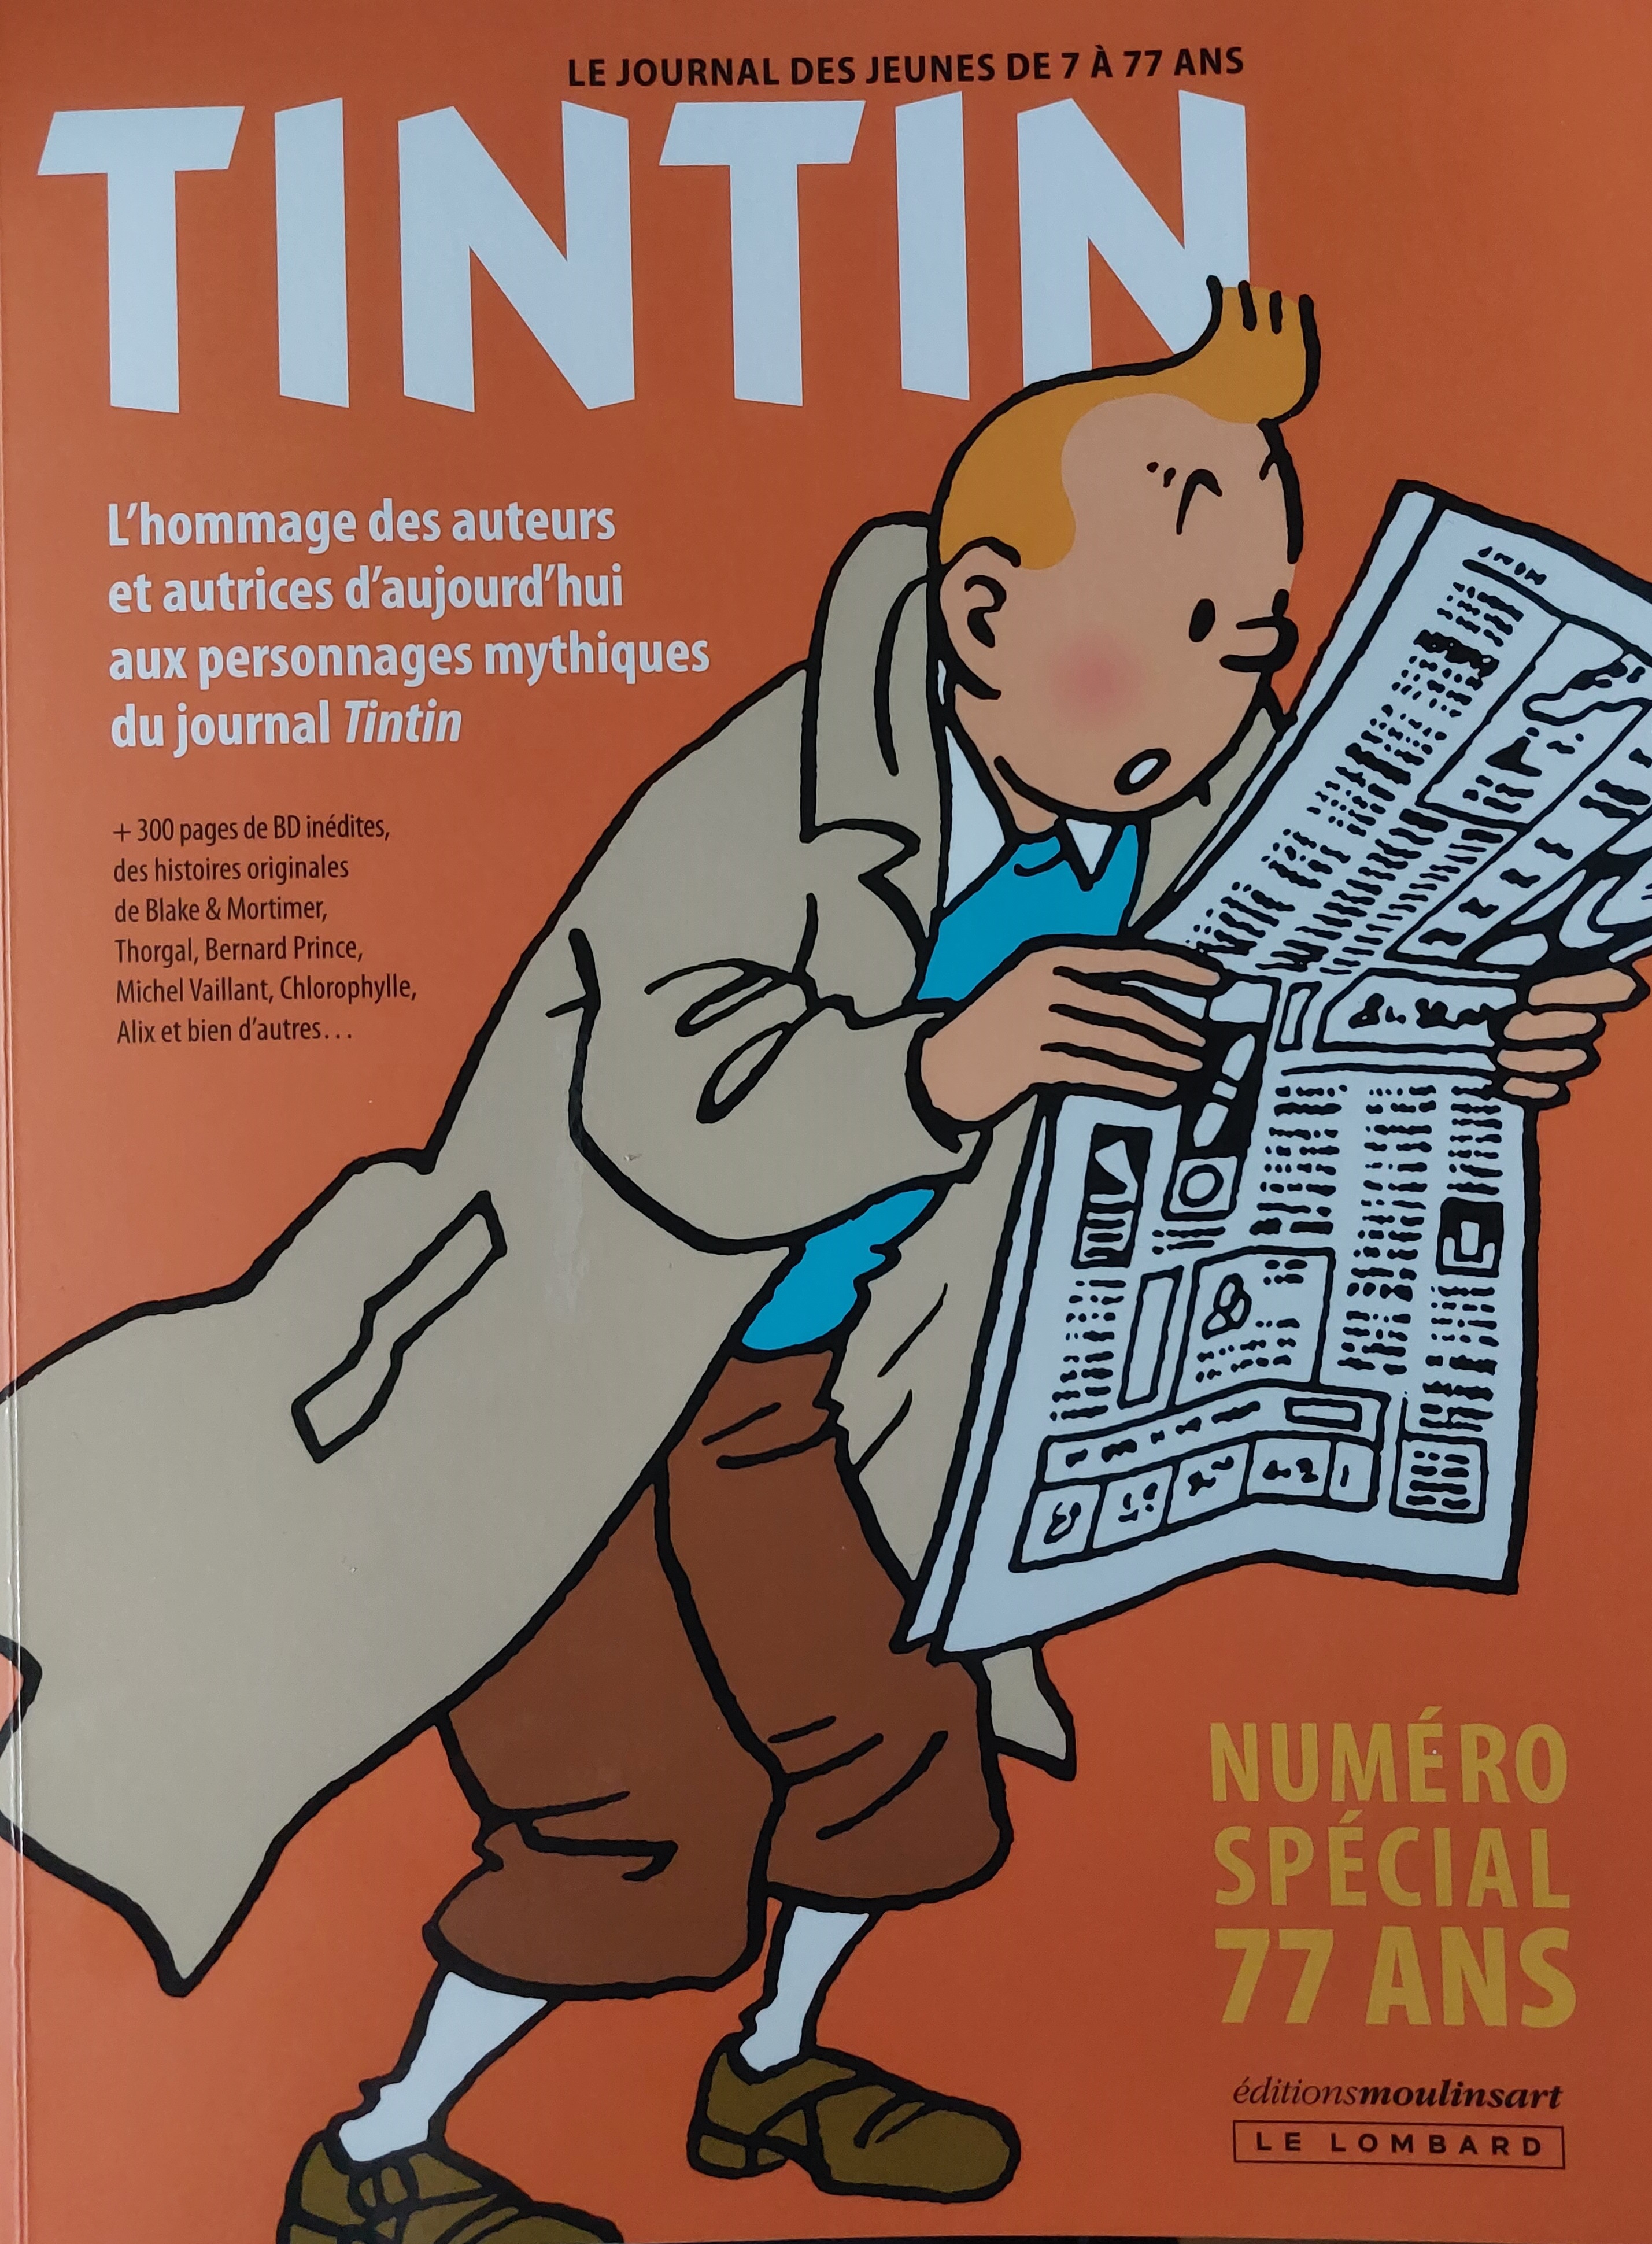 Tintin, un jeune journal de 77 ans : “Hergé, c'était la classe absolue” -  La Libre